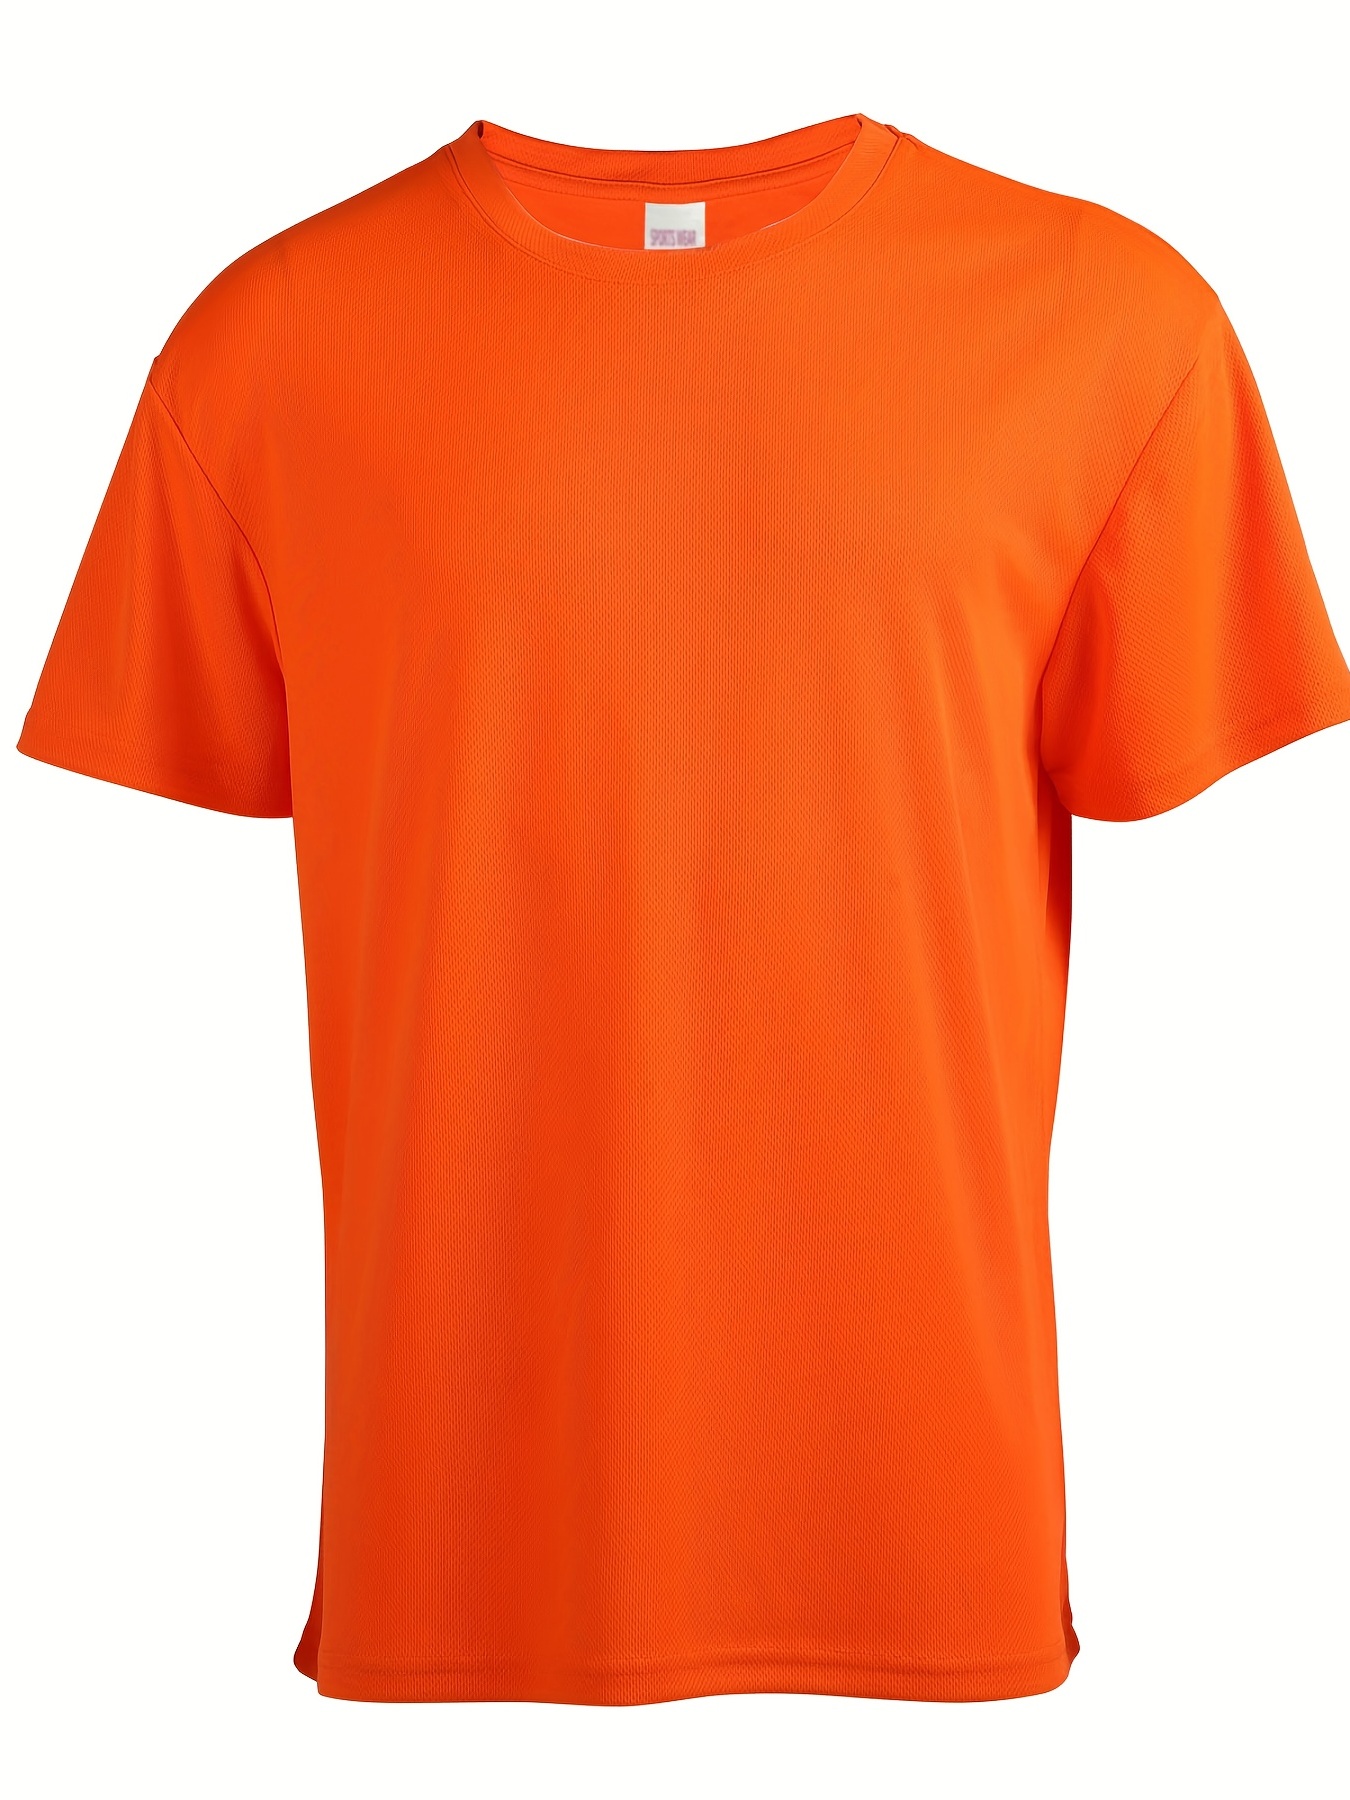 FHS Boys Basketball Long Sleeve ADULT T-Shirt